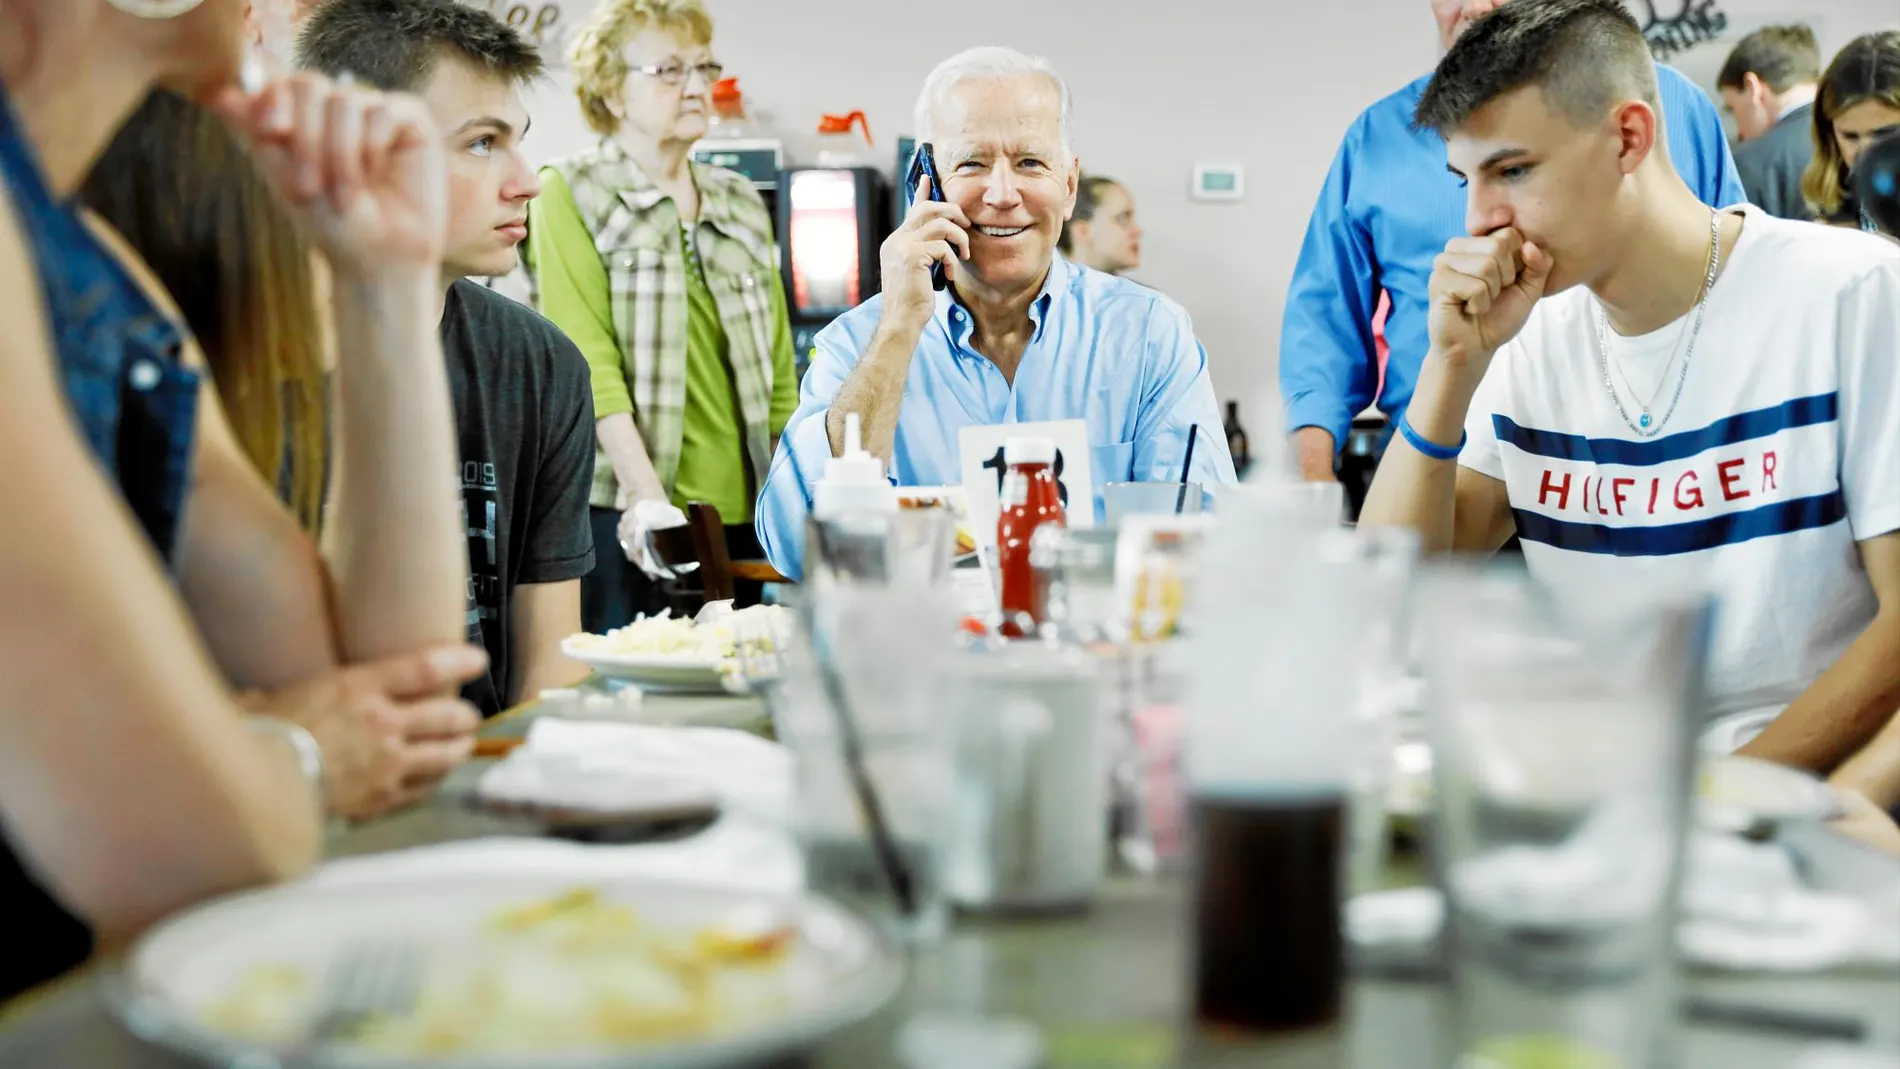 Joe Biden, vicepresidente con Barack Obama, contesta a un seguidor por teléfono en un café de Iowa / Ap